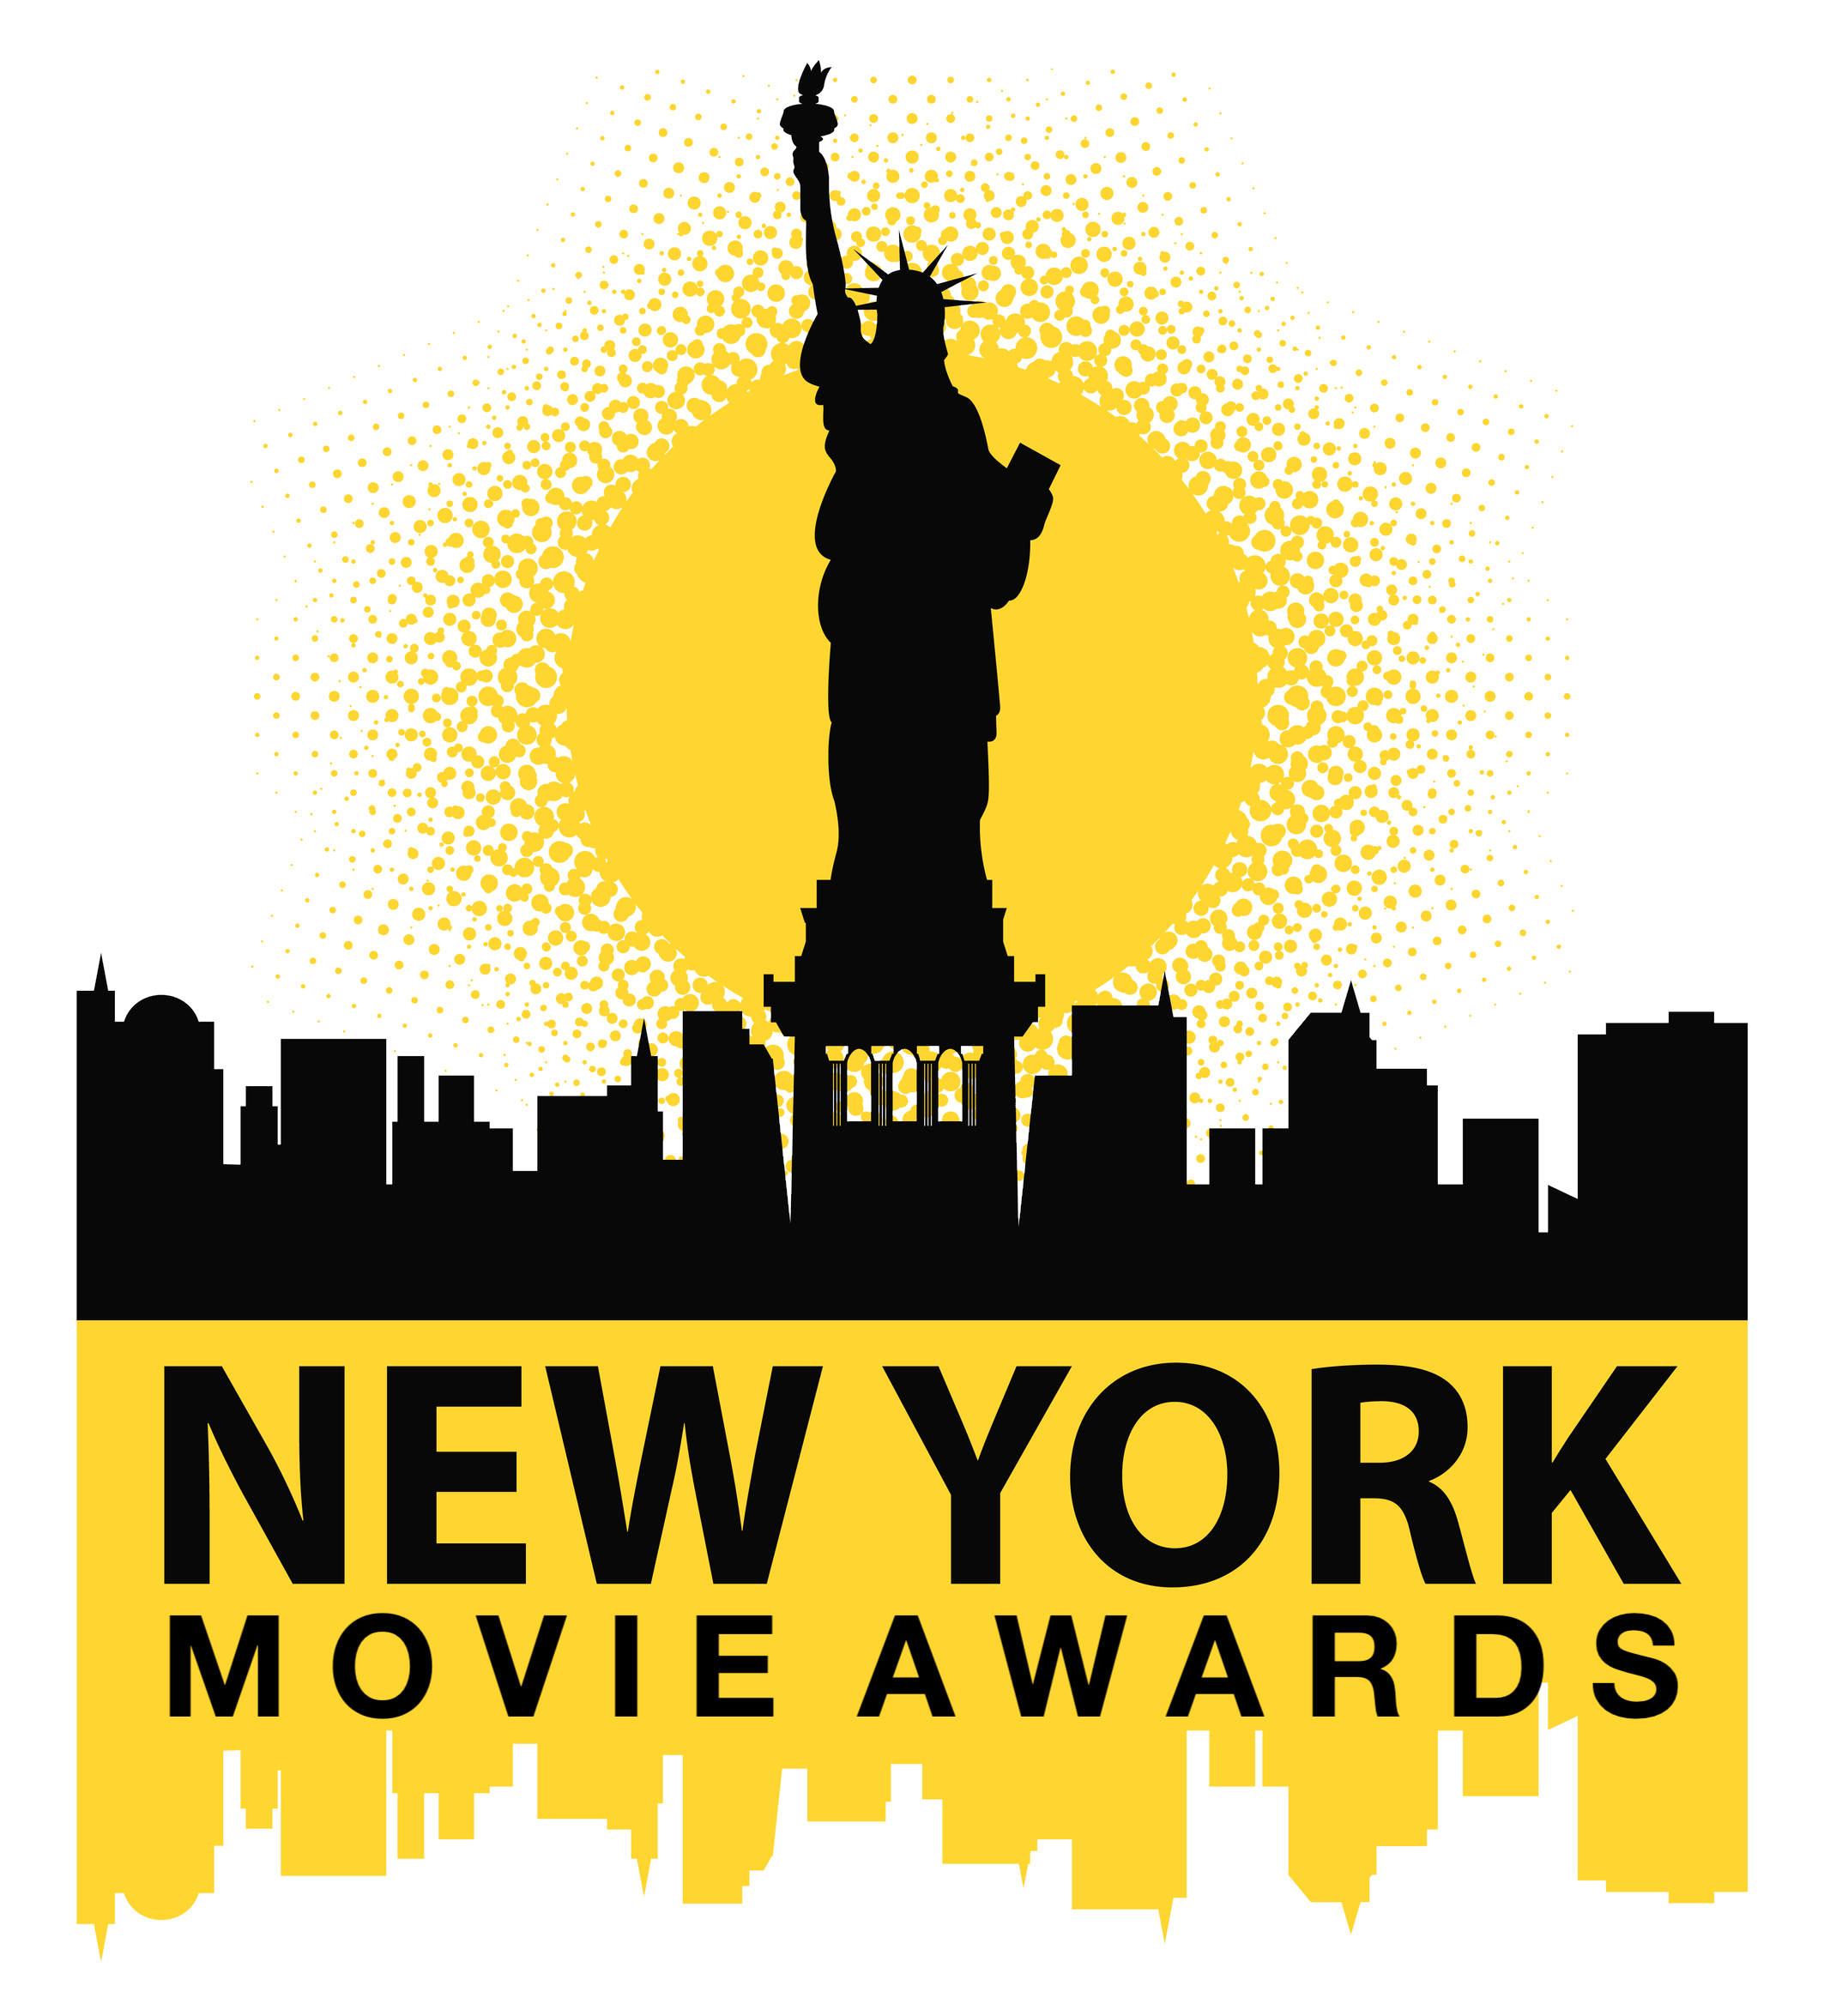 NEW YORK MOVIE AWARDS